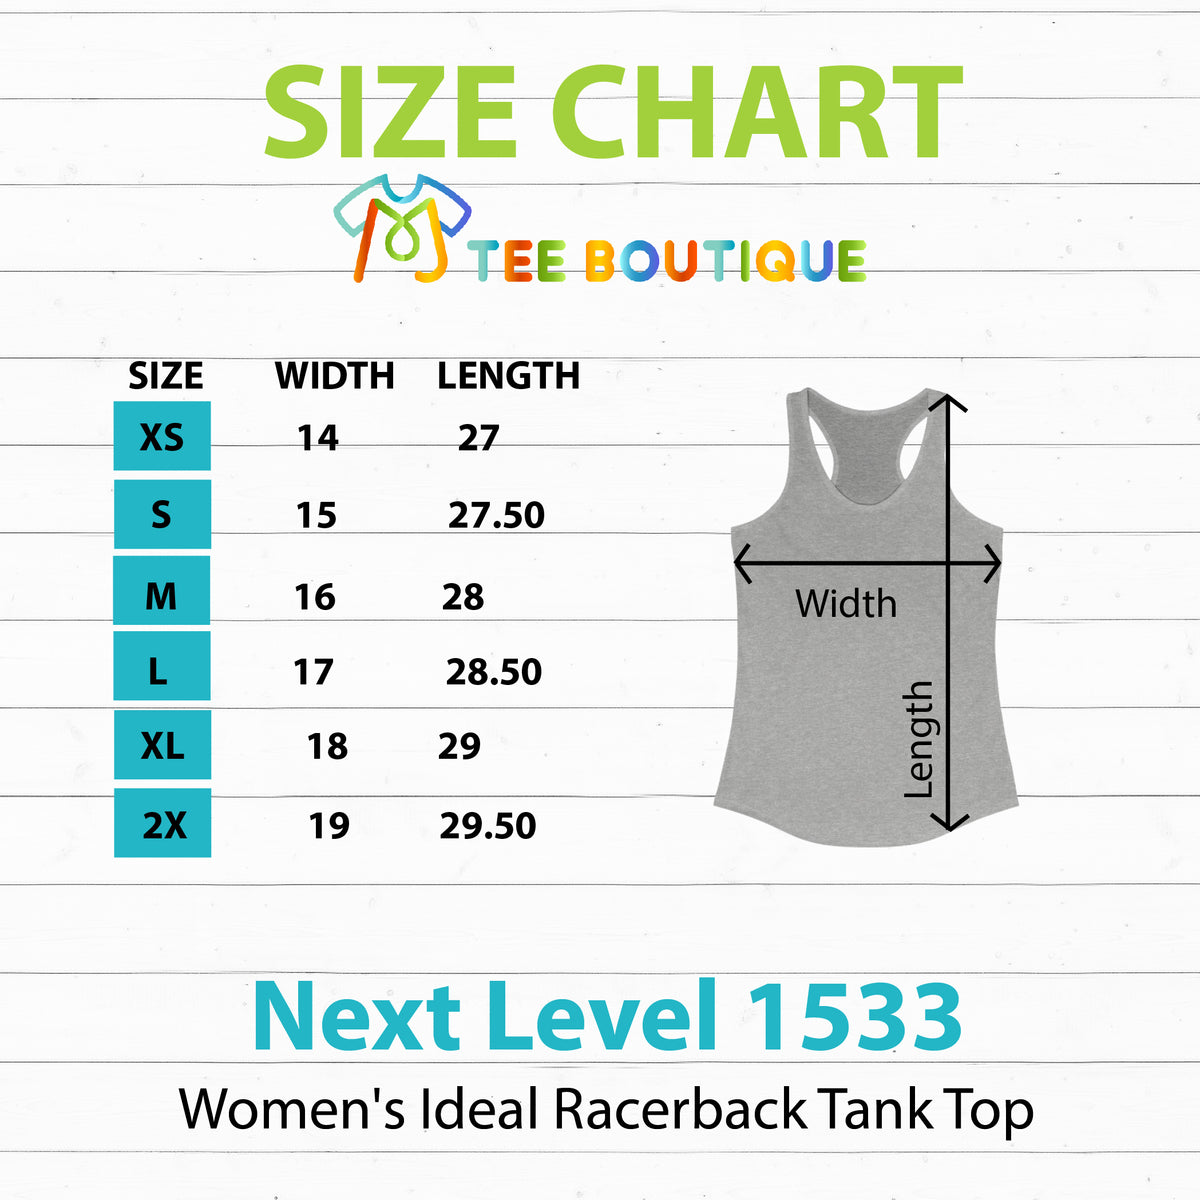 Beach Vibes T Rex Shirt | Funny Dinosaur Shirt | Beach Bum Shirt | Tropical Summer Shirt | Women's Slim-fit Racerback Tank Top